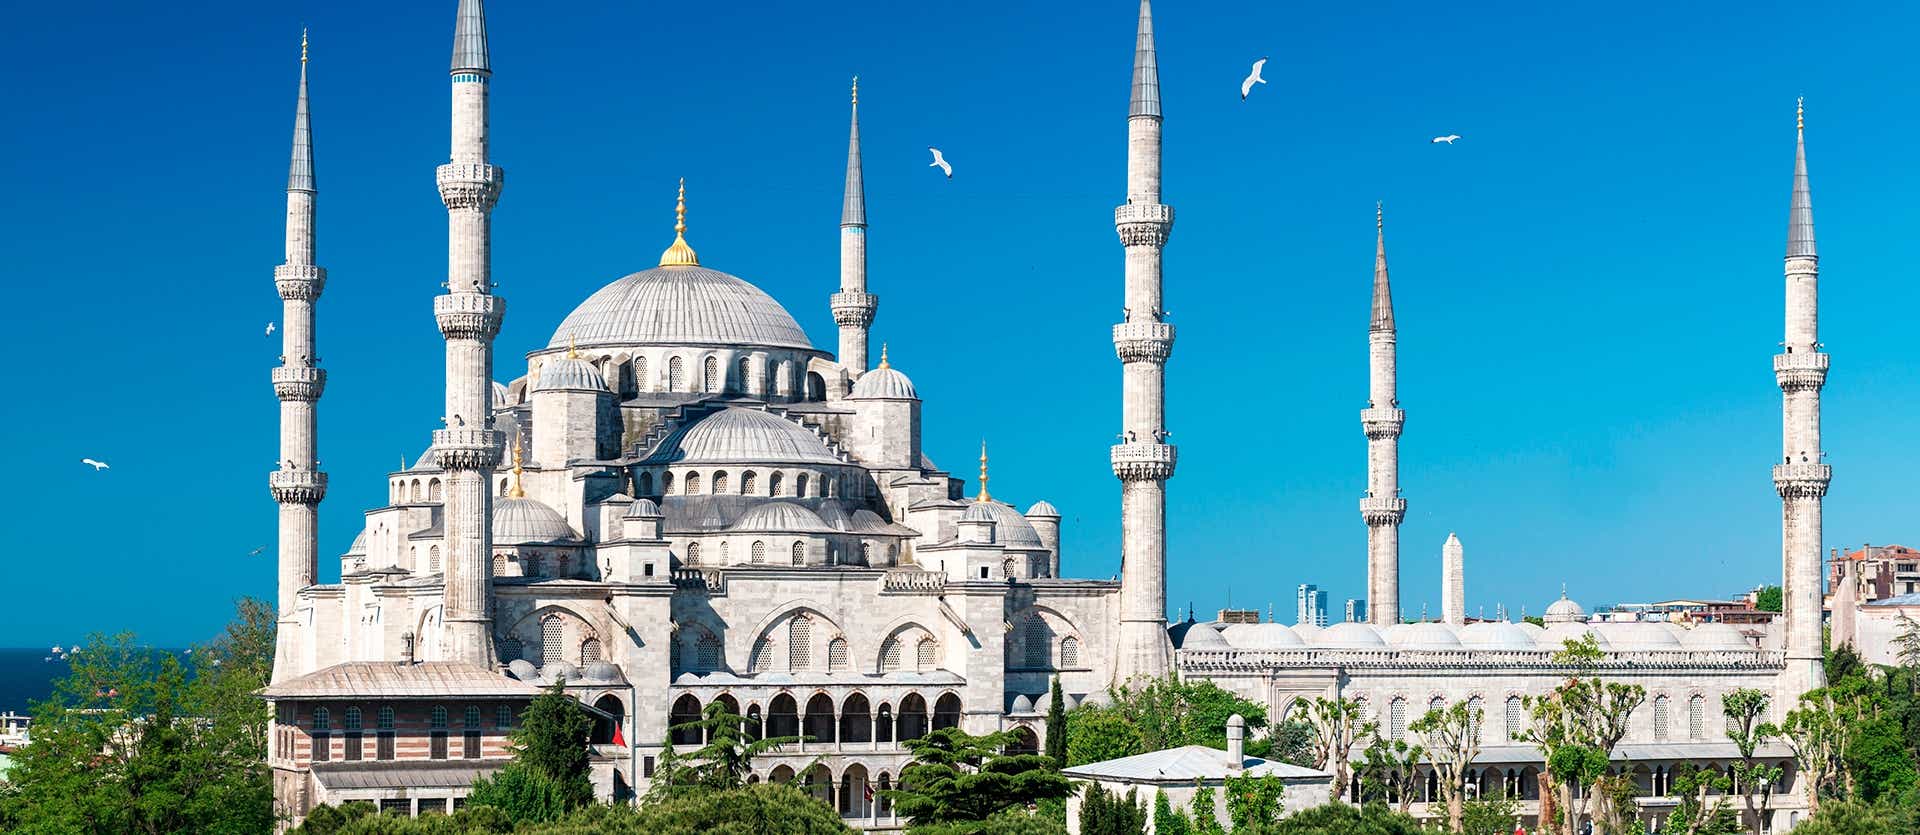 Blaue Moschee <span class="iconos separador"></span> Istanbul 